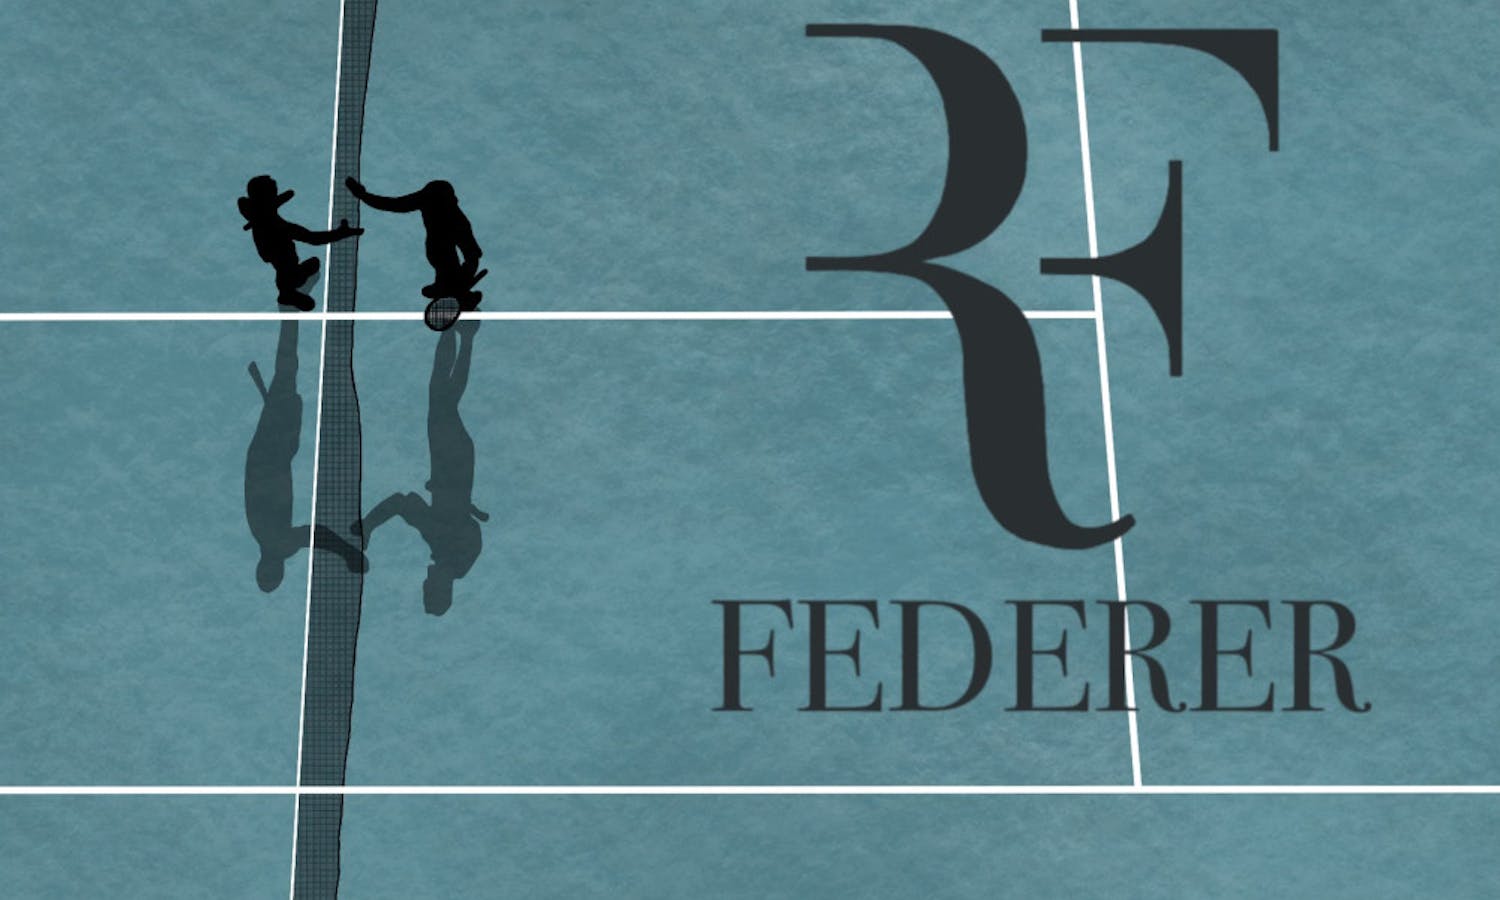 Roger-Federer-Graphic